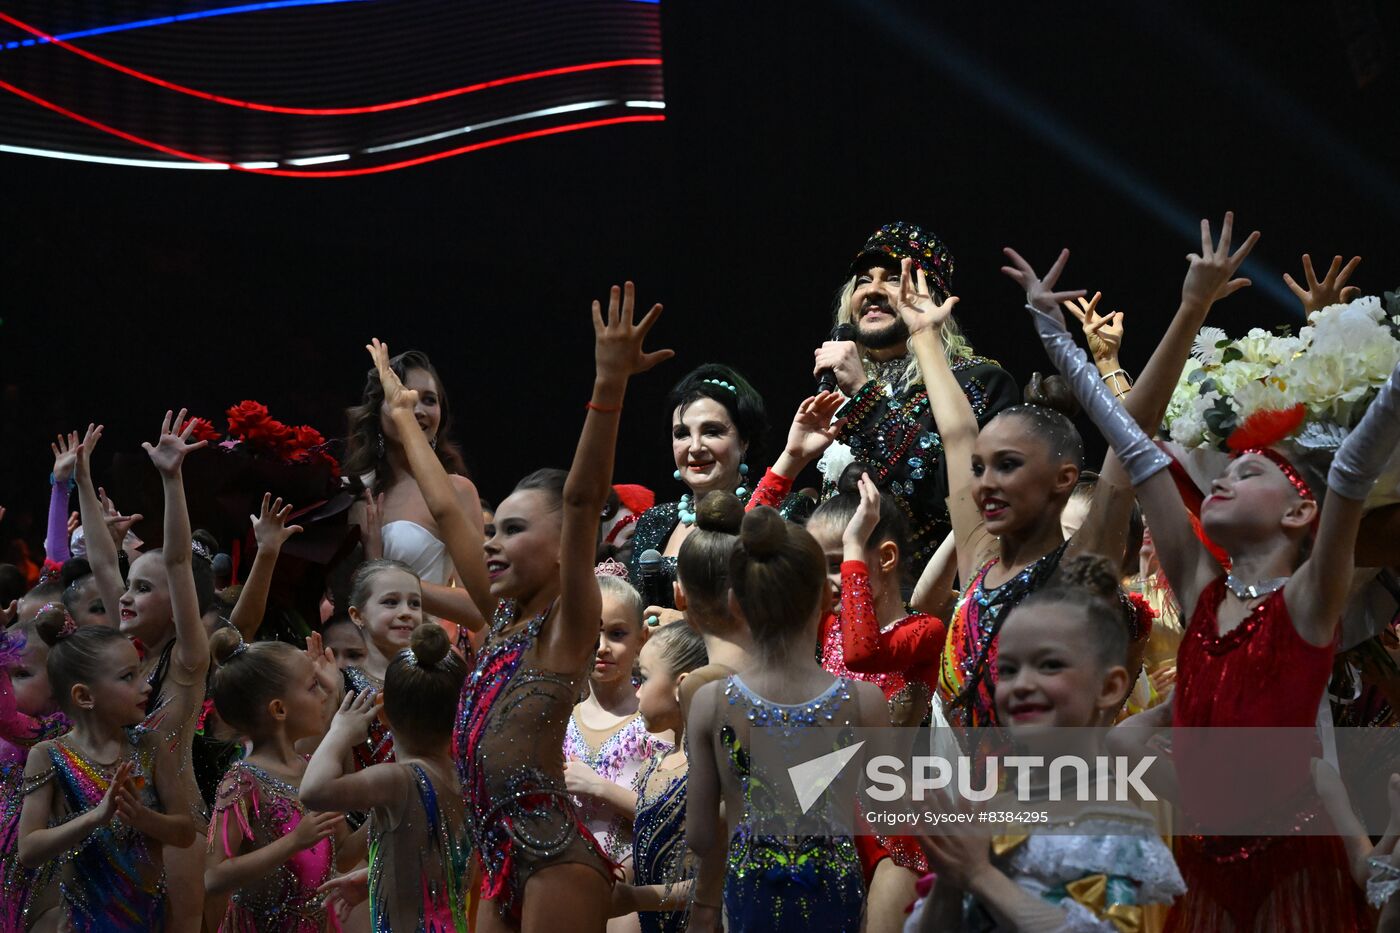 Russian Rhythmic Gymnastics Championship Gala Show